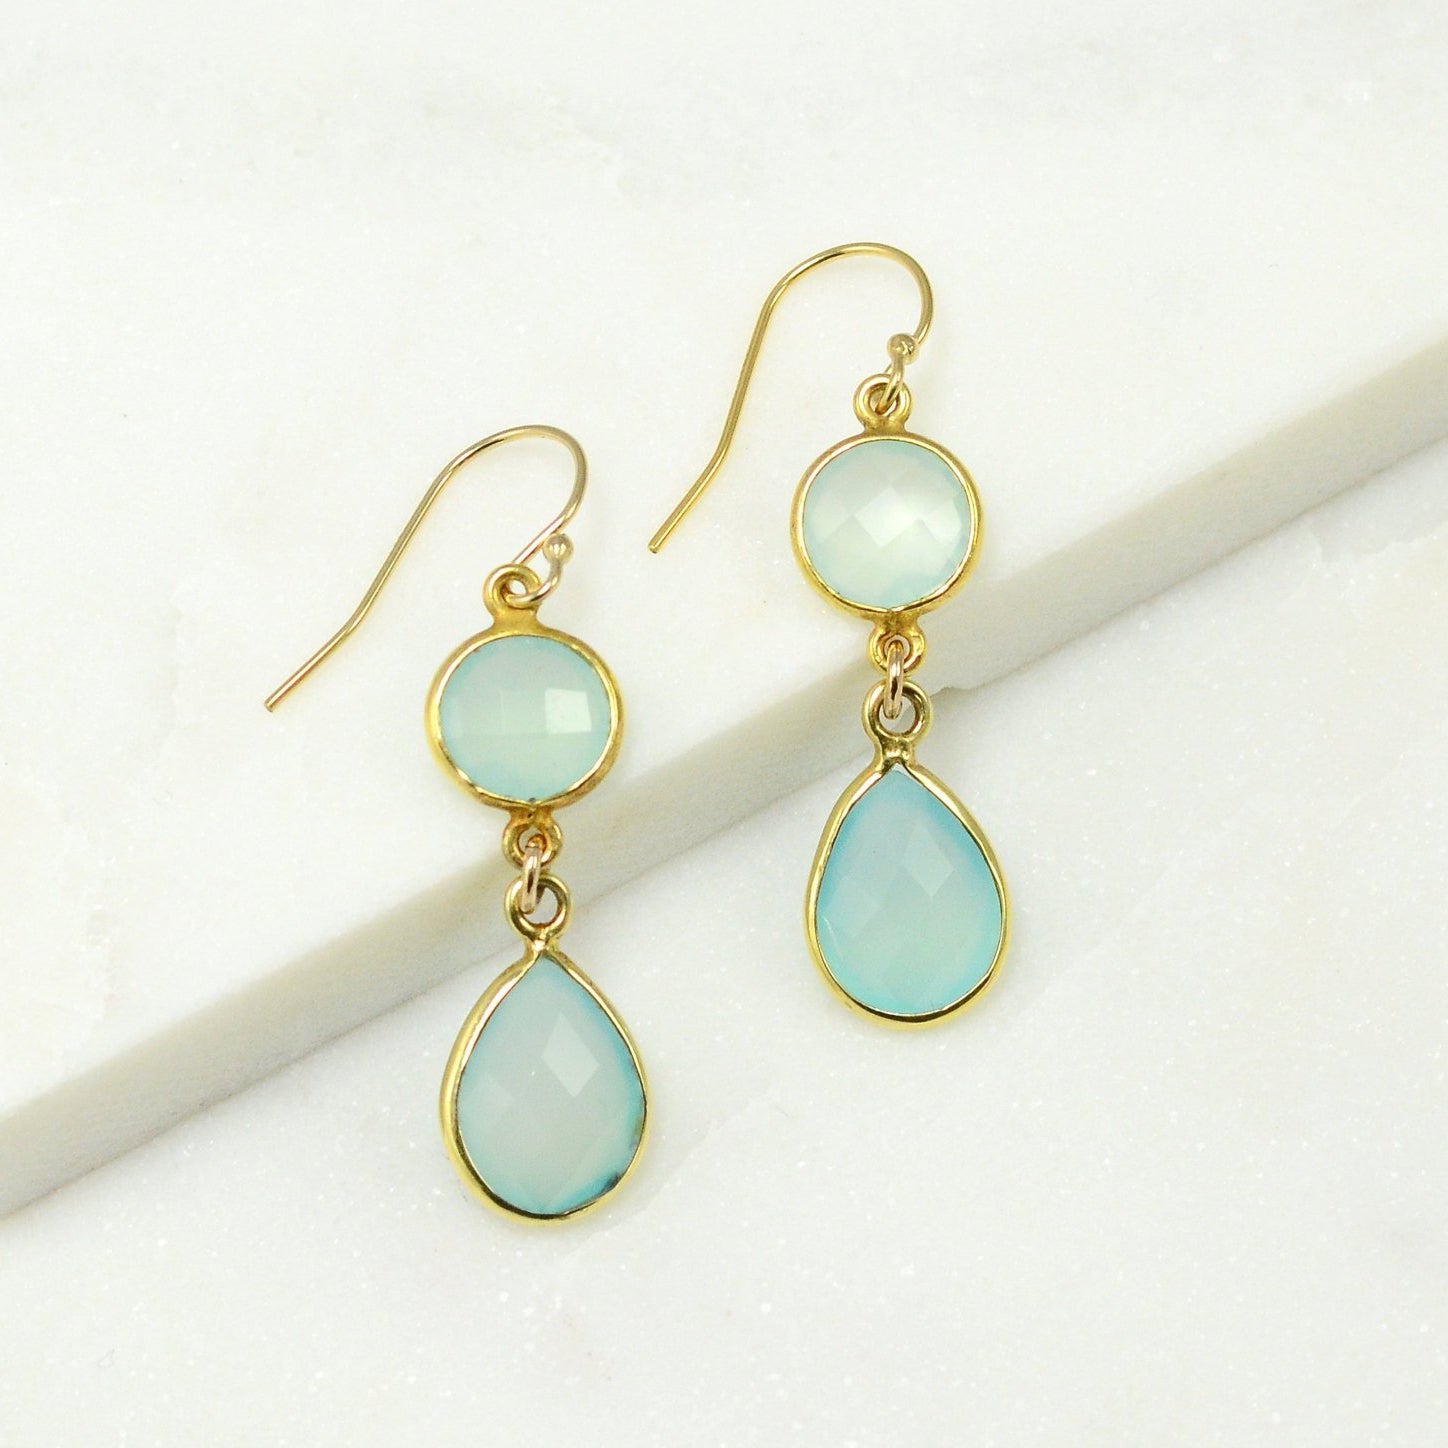 Aqua Chalcedony Earring - Color Gemstone Earrings - Dangle and Drop Earring - Two tier earring - Bezel Drop Earrings - Bridesmaid Earrings